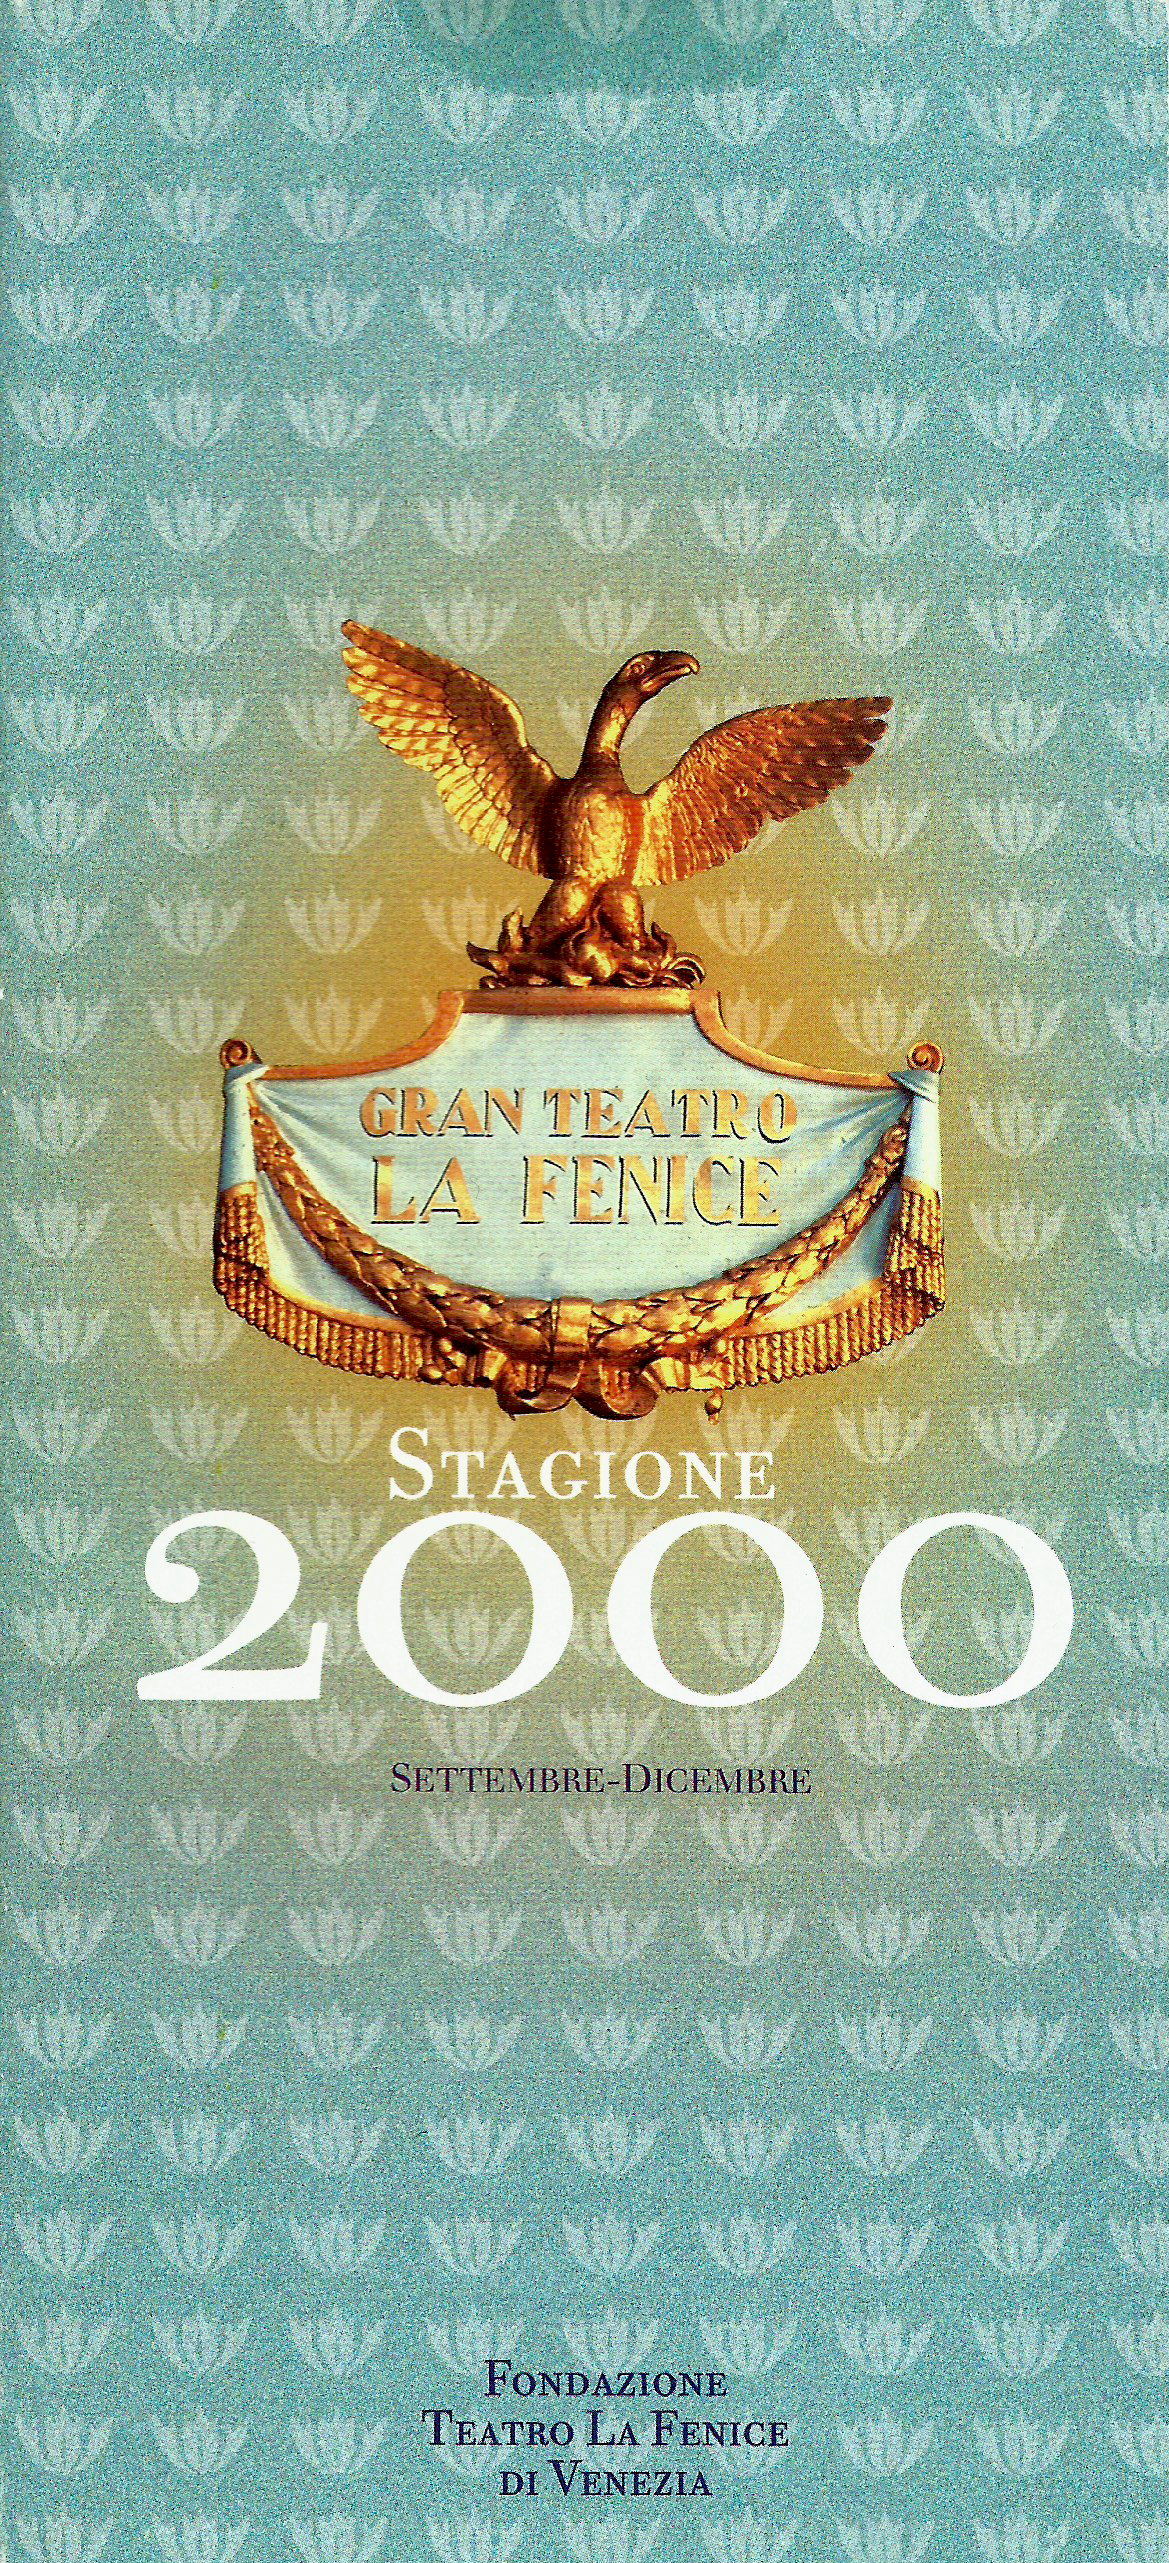 GRAN TEATRO LA FENICE, STAGIONE 2000